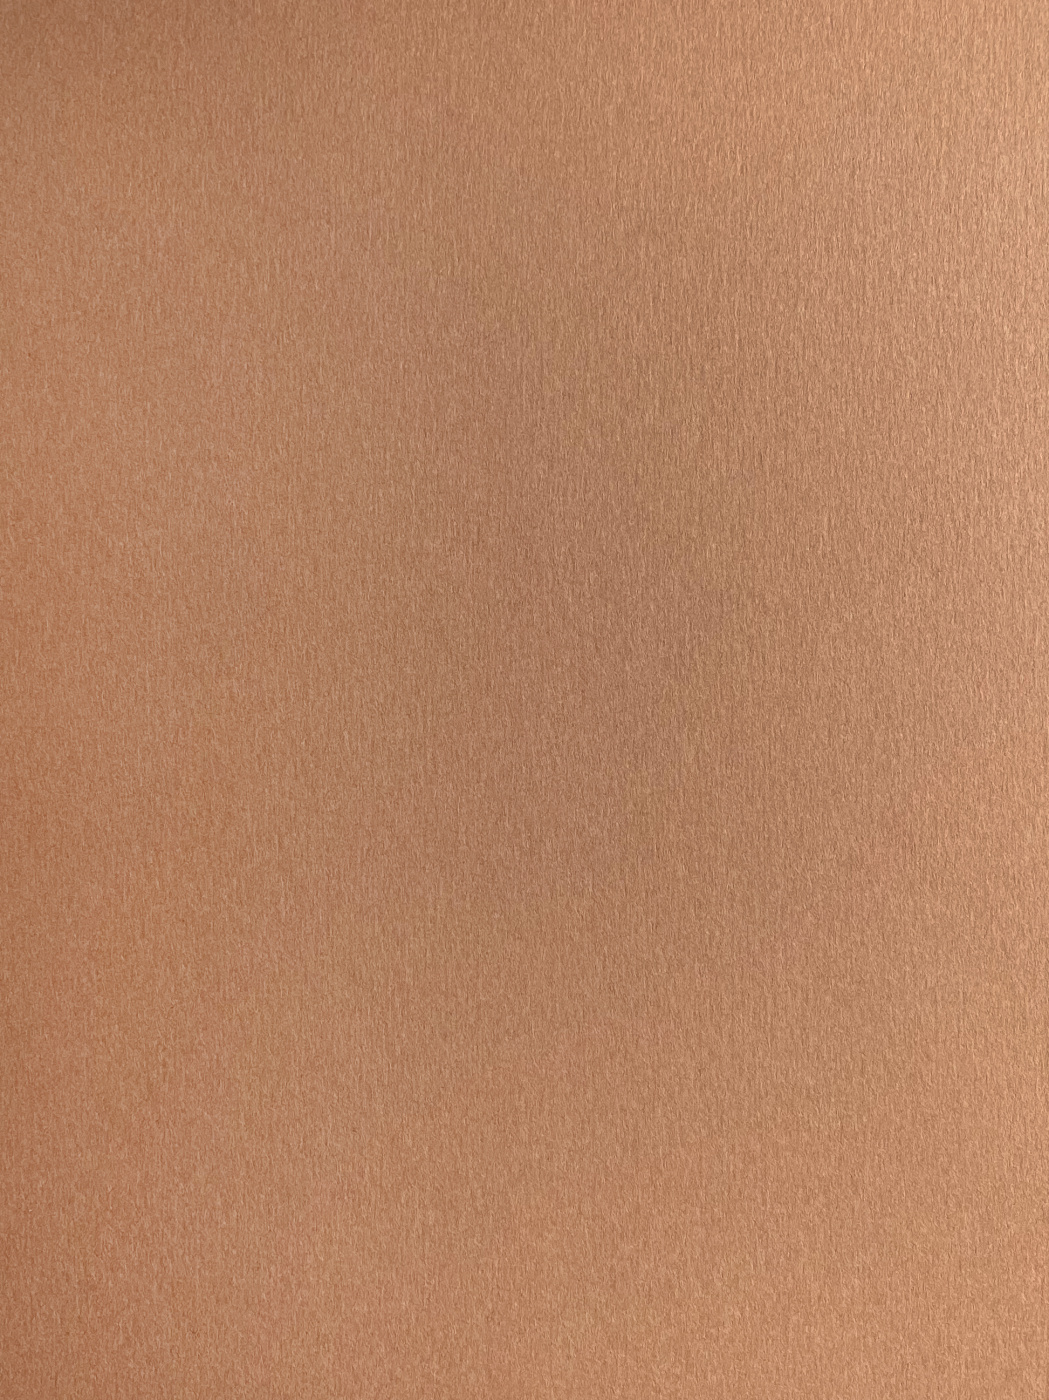 Бумага для пастели Малевичъ GrafArt А4 270 г, коричневая светлая бумага для декора и флористики крафт коричневая однотонная двусторонняя рулон 1шт 0 72 x 50 м